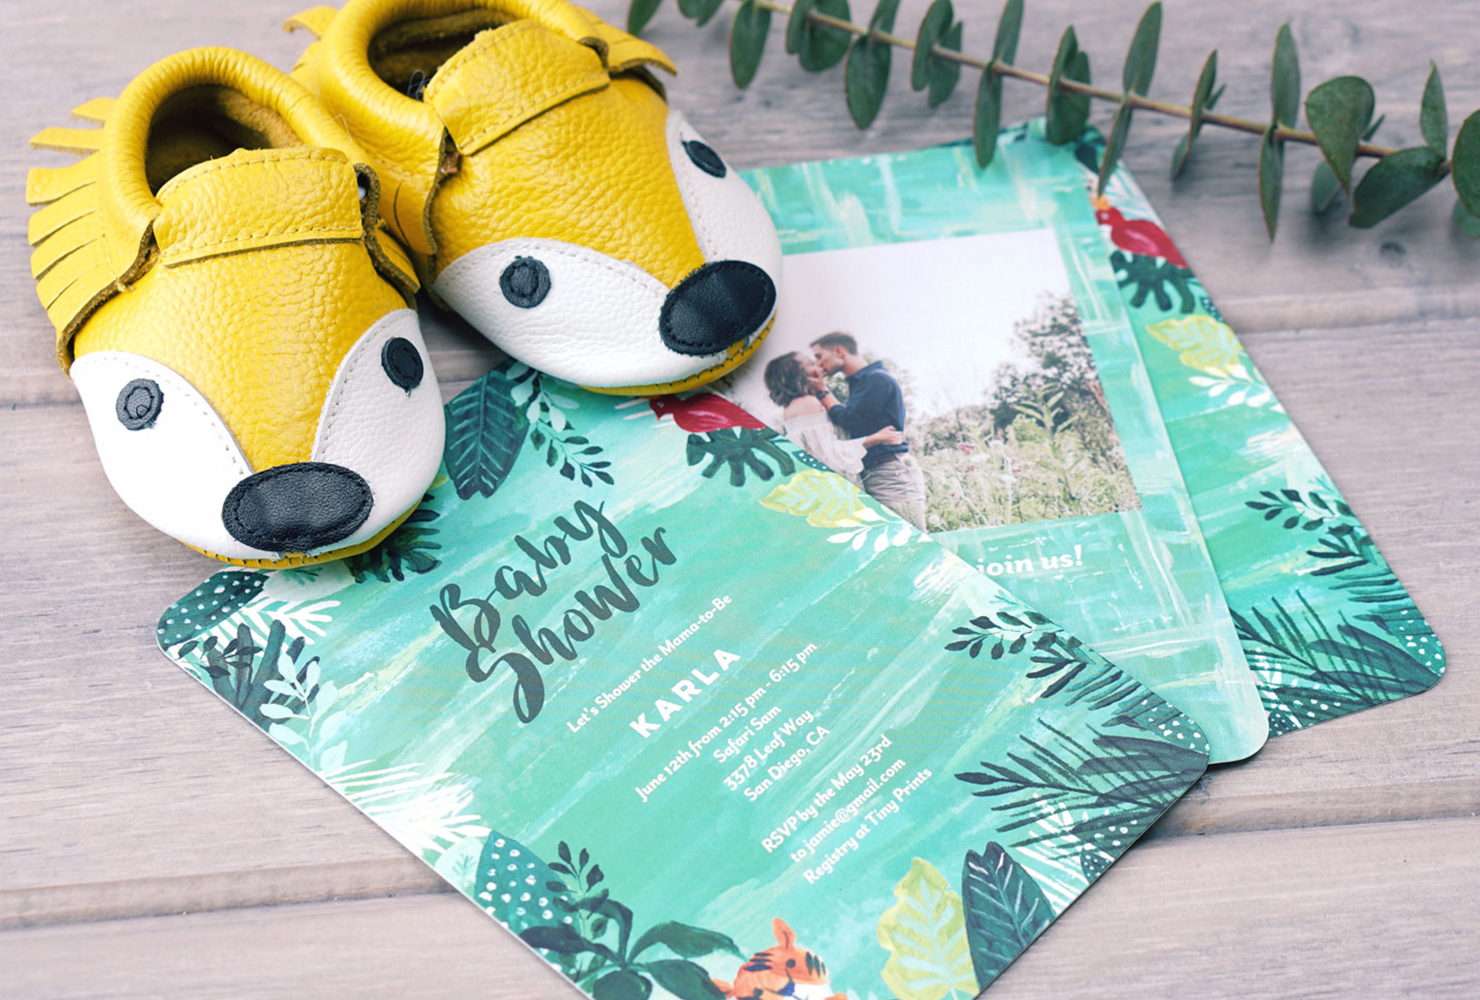 Персонализированные приглашения на детский праздник в стиле сафари с парой желтых детских туфелек